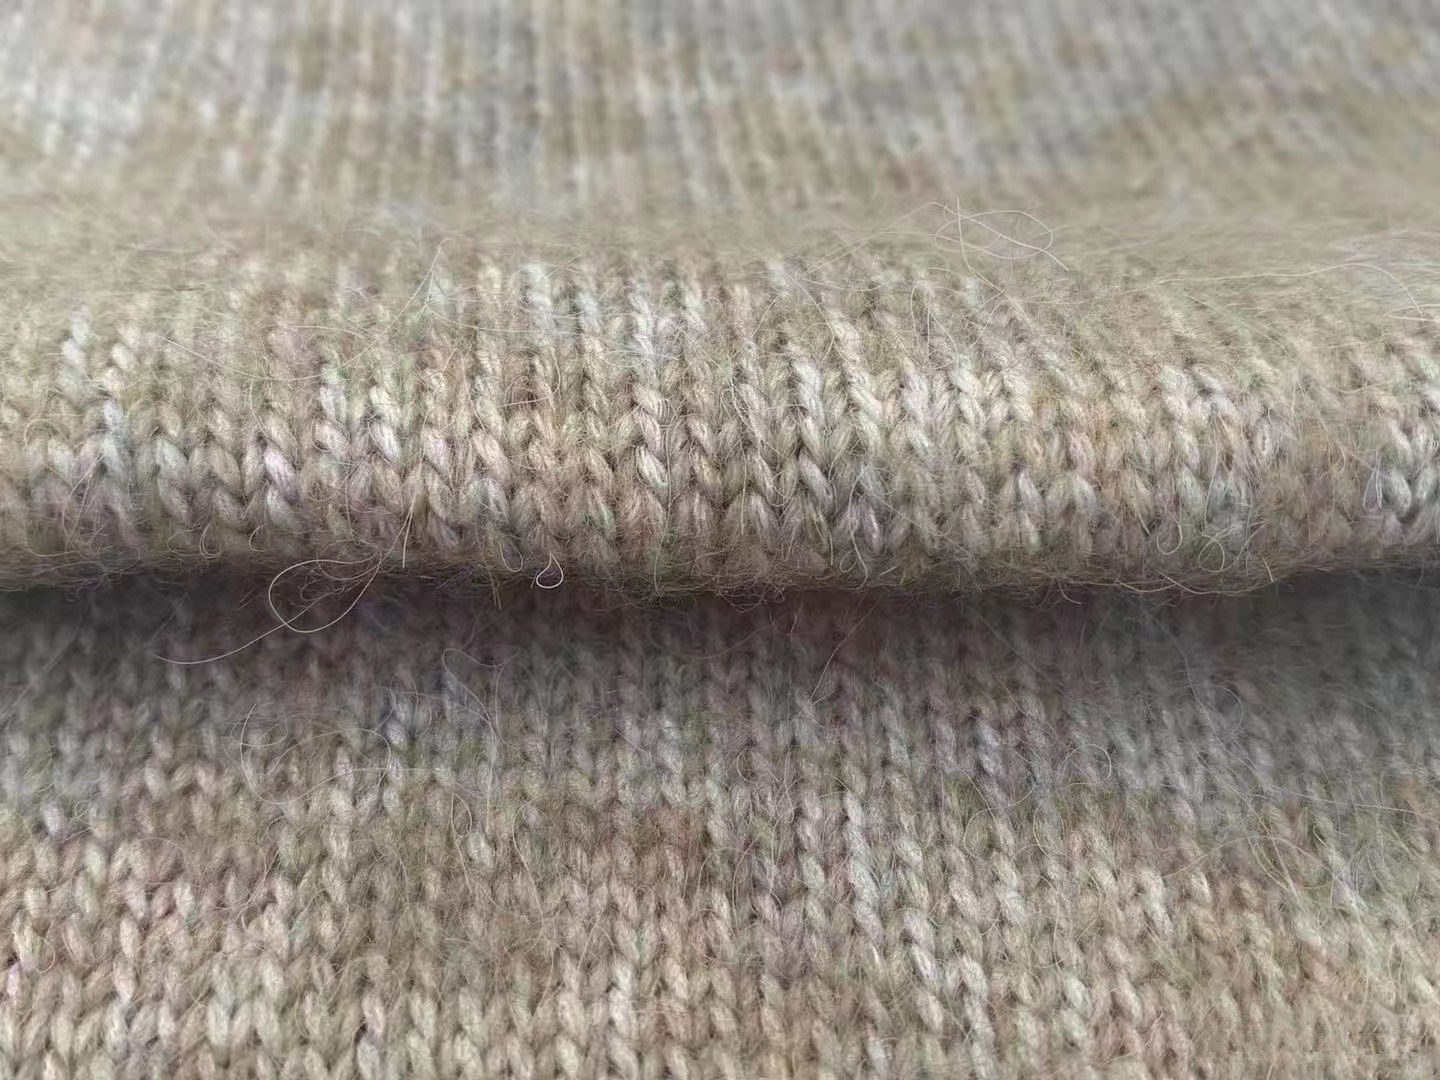 बहु रंग Crochet इंद्रधनुष यार्न 6.2NM फैंसी यार्न